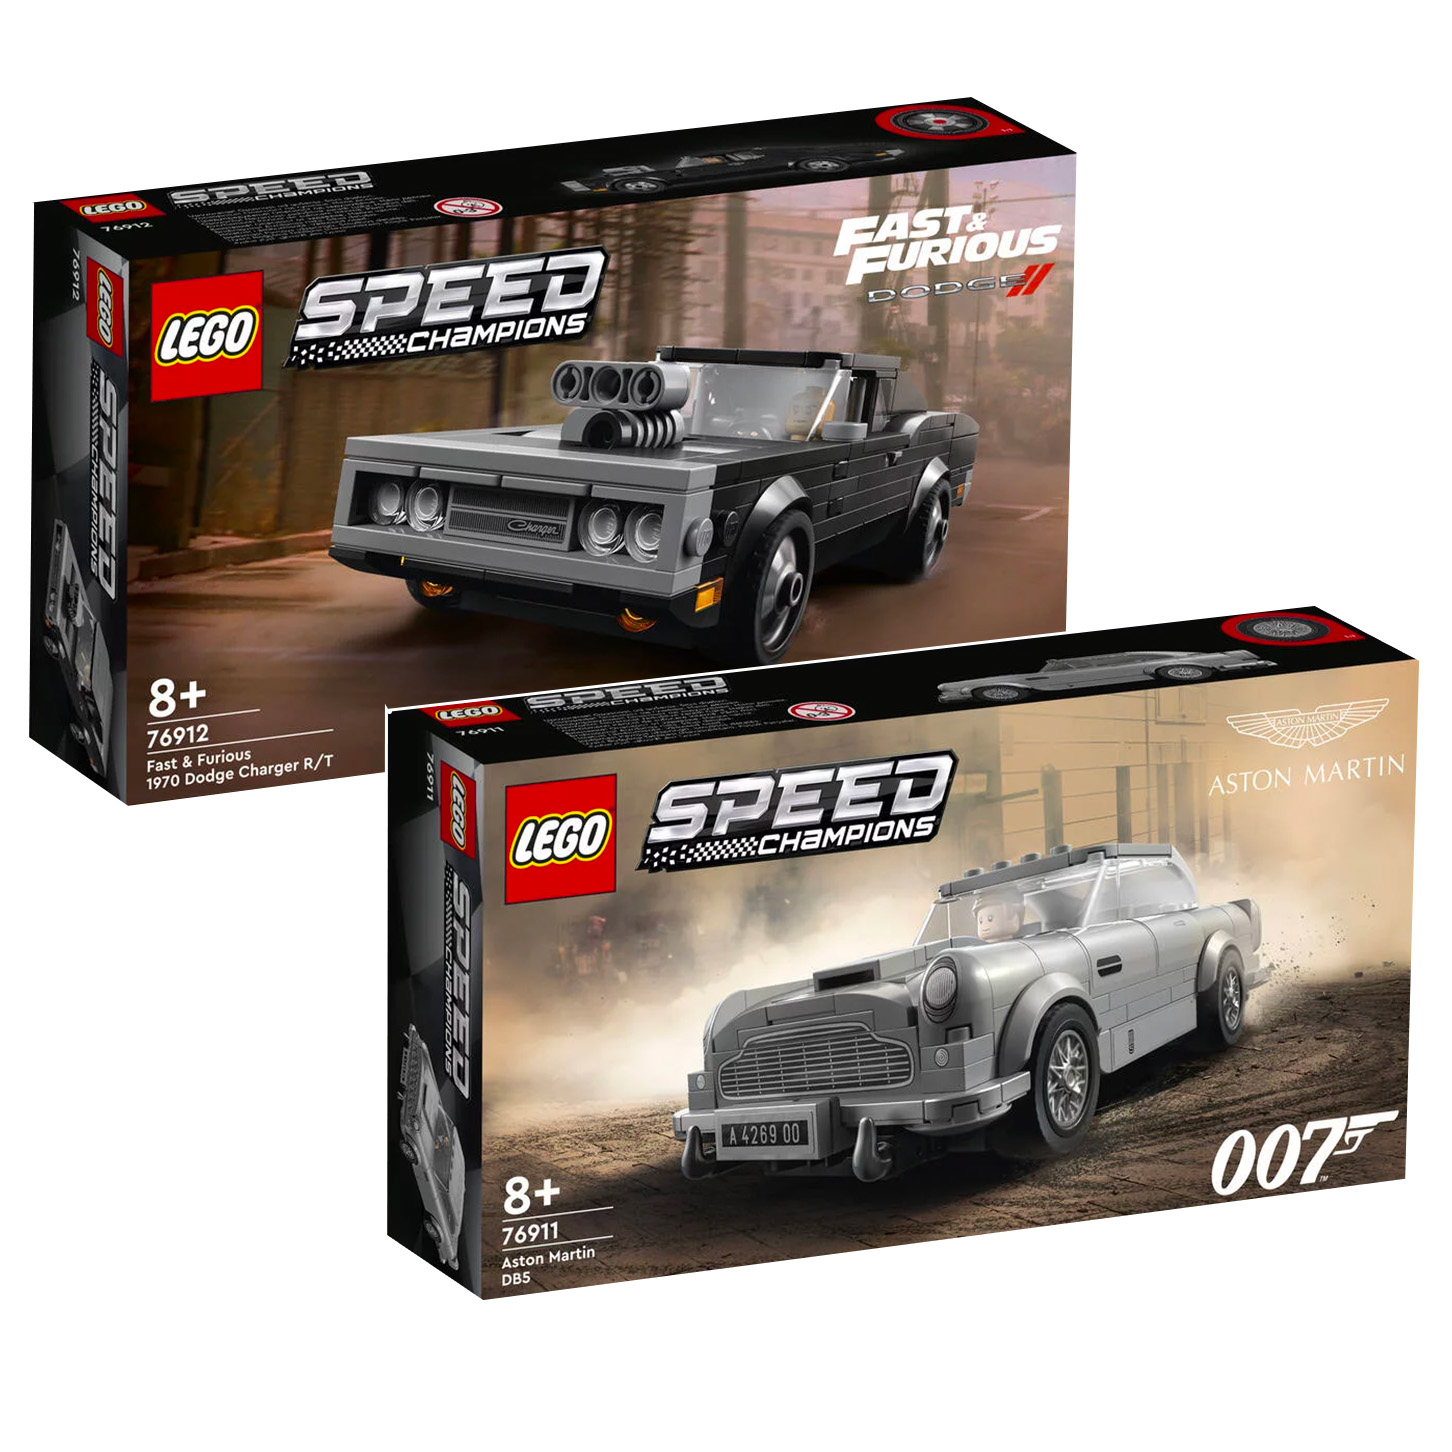 Uued LEGO Speed ​​​​Champions 76911 Aston Martin DB5 ja 76912 Fast & Furious 1970 Dodge Charger R/T komplektid on poes saadaval